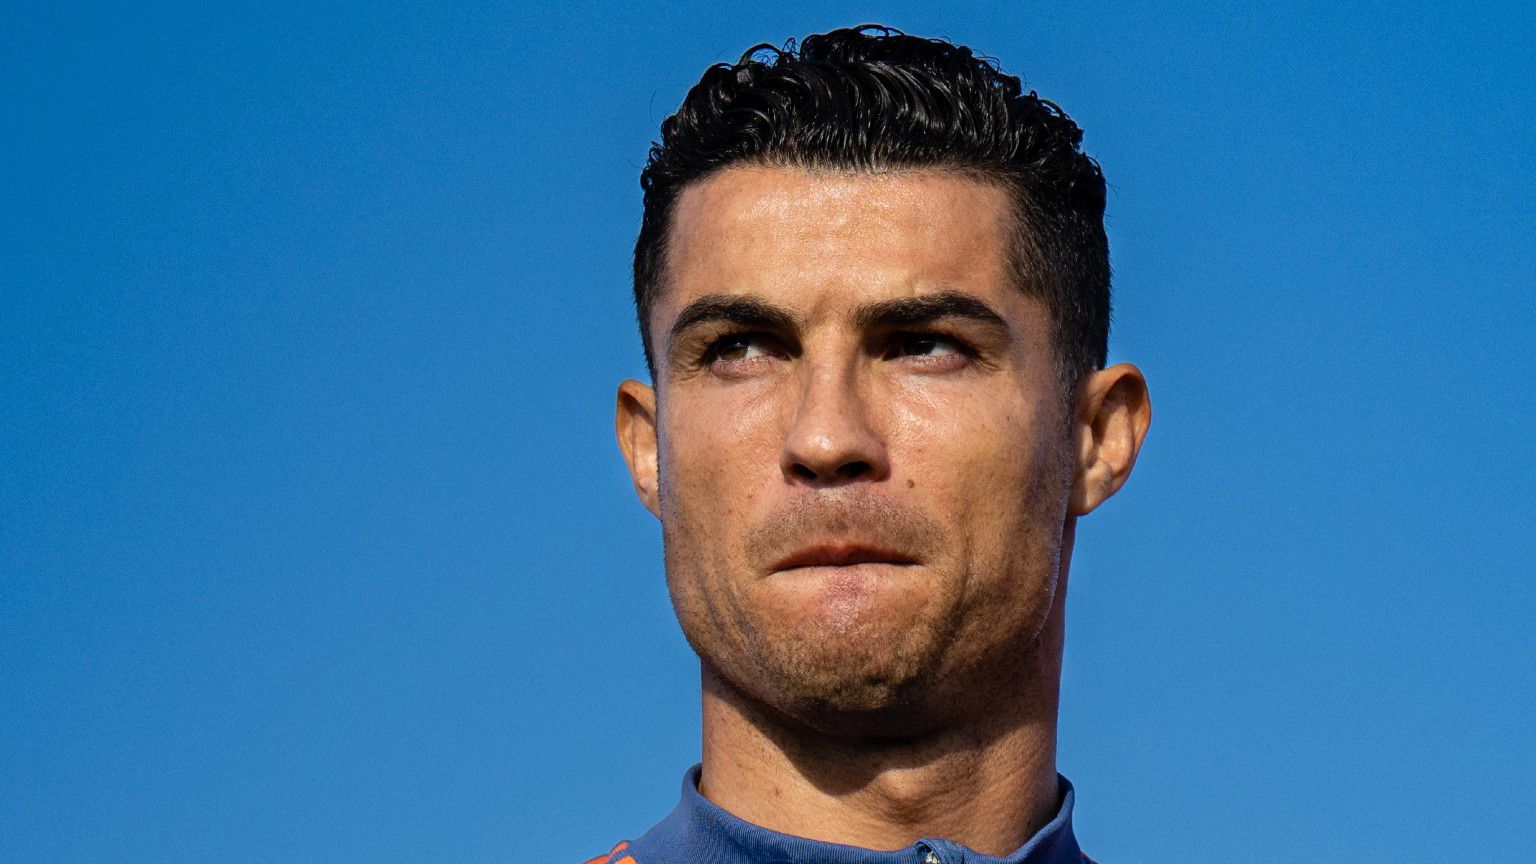 „Hamarosan újra együtt leszünk” – a hisztiző Ronaldo az Instagram-oldalán üzent